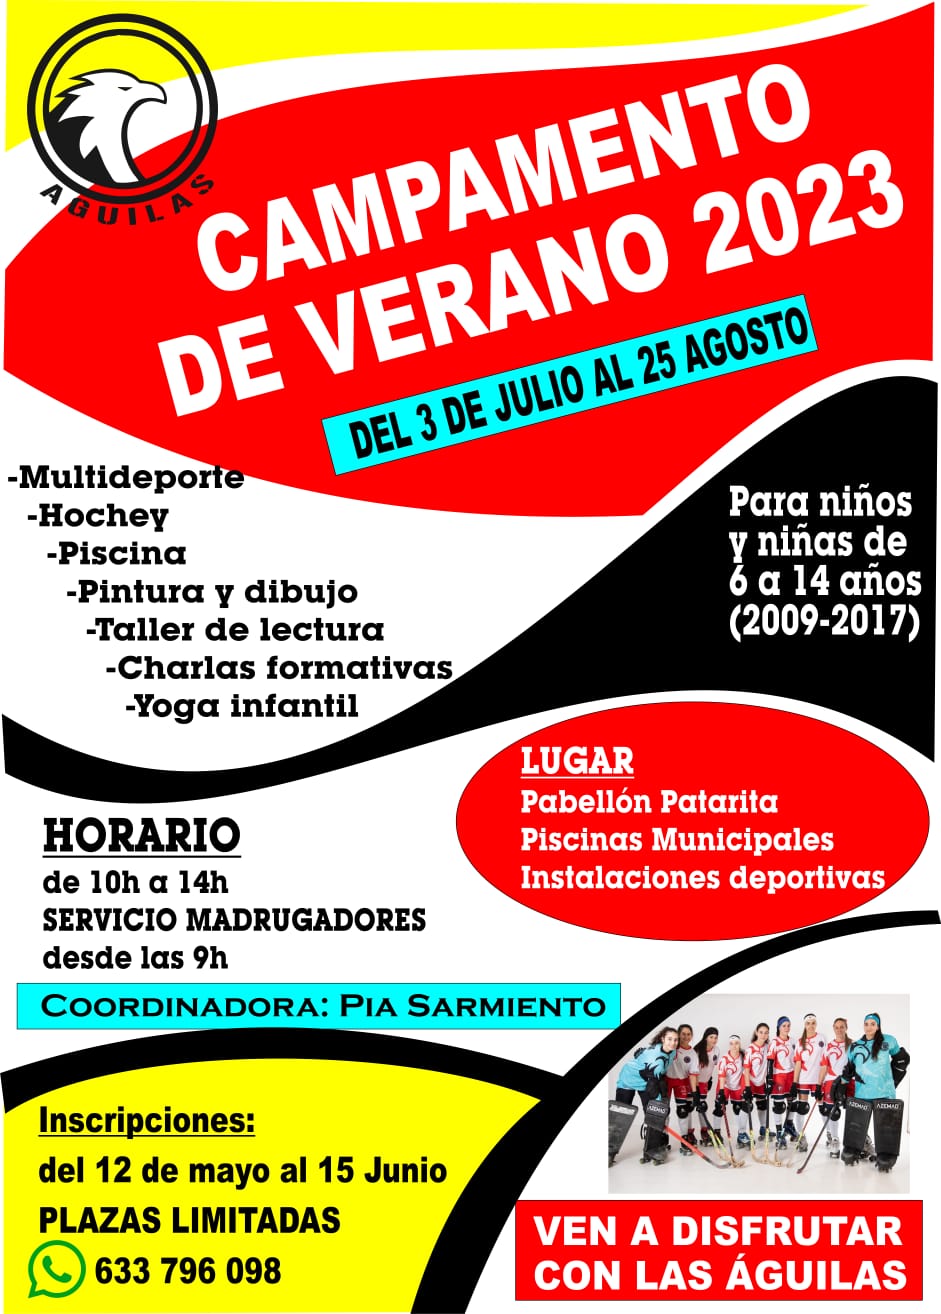 Campamentos y Campus de verano 2023 en Ponferrada y El Bierzo 16